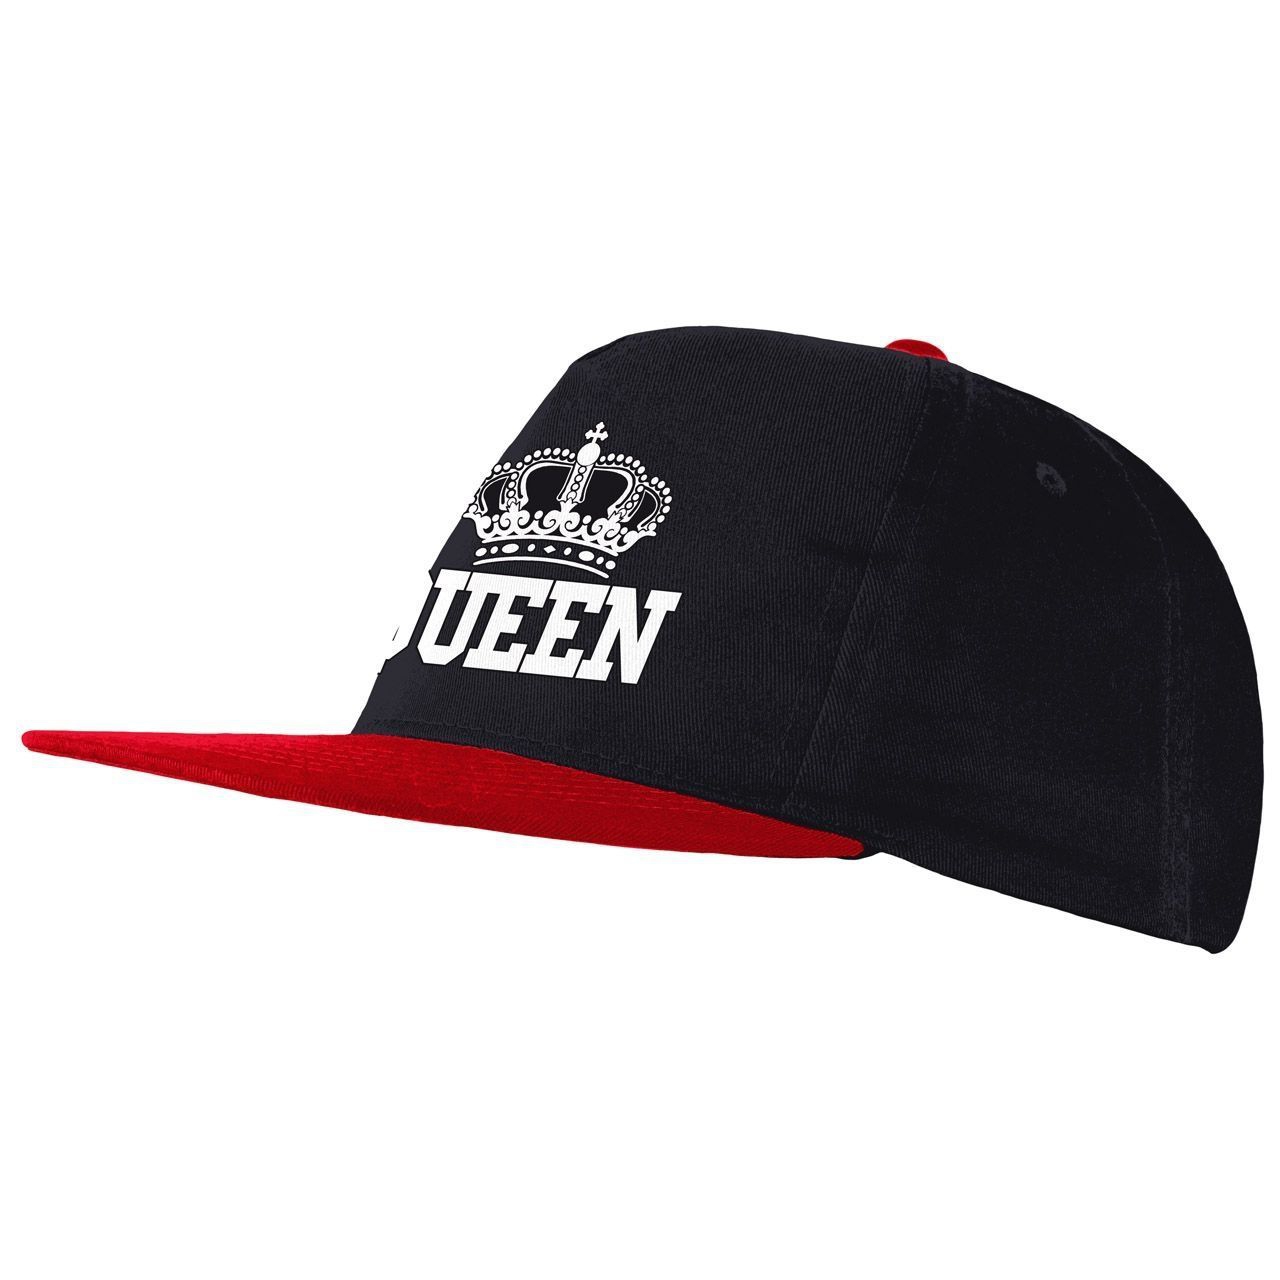 Queen Cap Flachschirm schwarz/rot